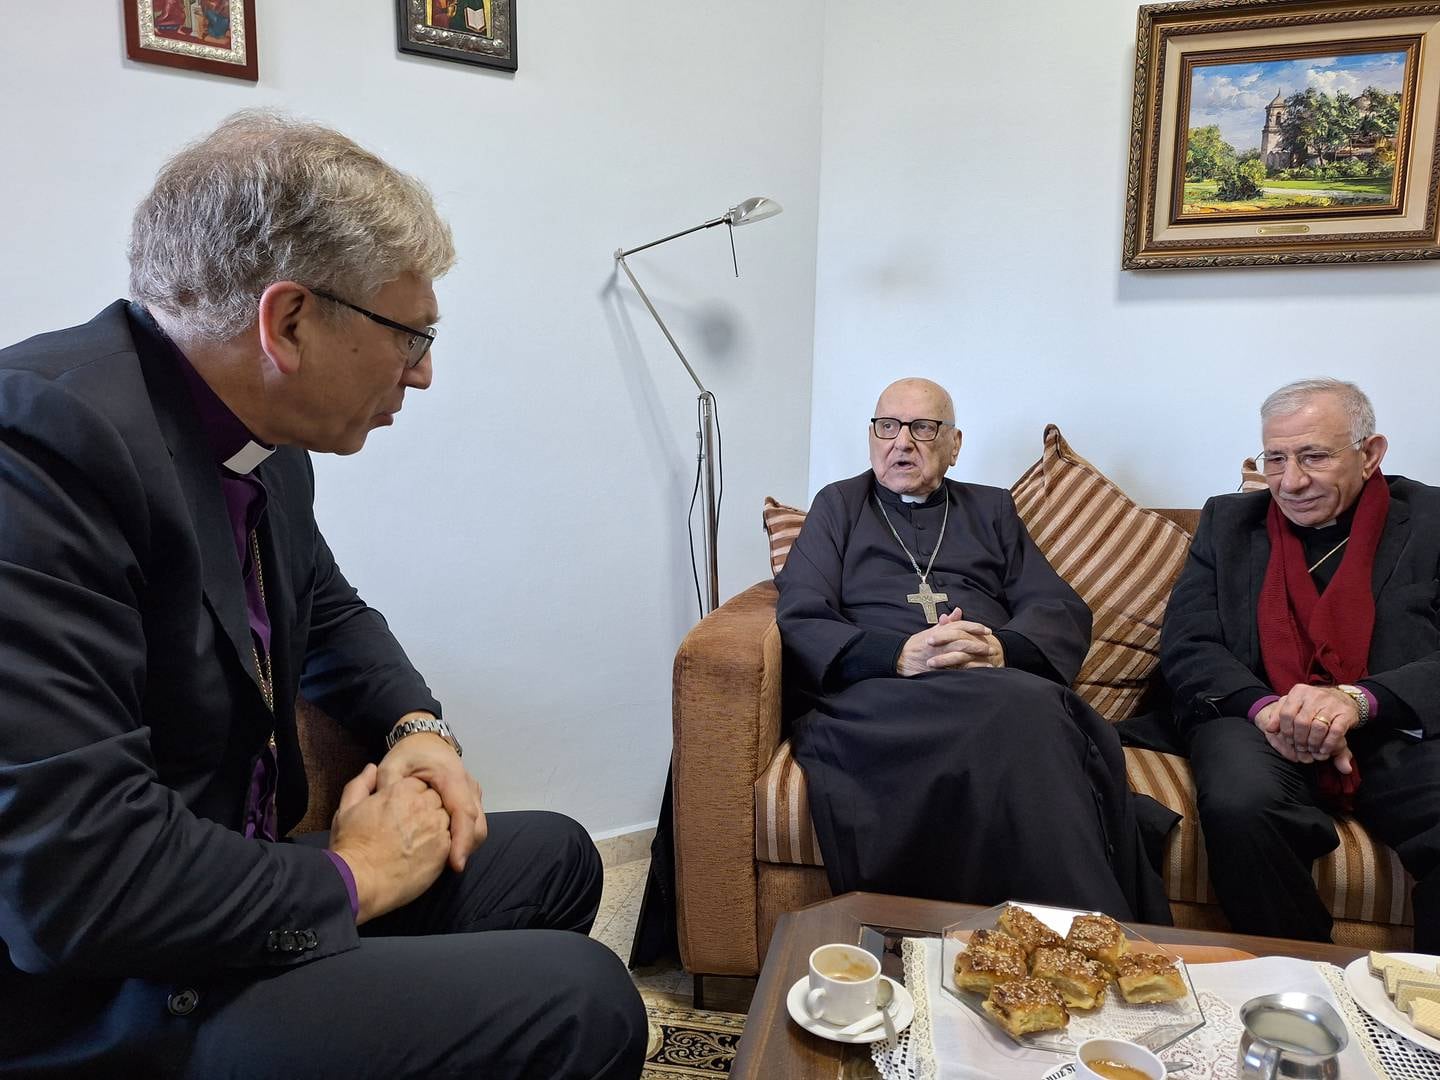 KRISTENLEDERE: Blant dem preses møtte, var biskop emeritus Munib Younan og tidligere patriark i Den katolske kirke, Michael Sabbah.